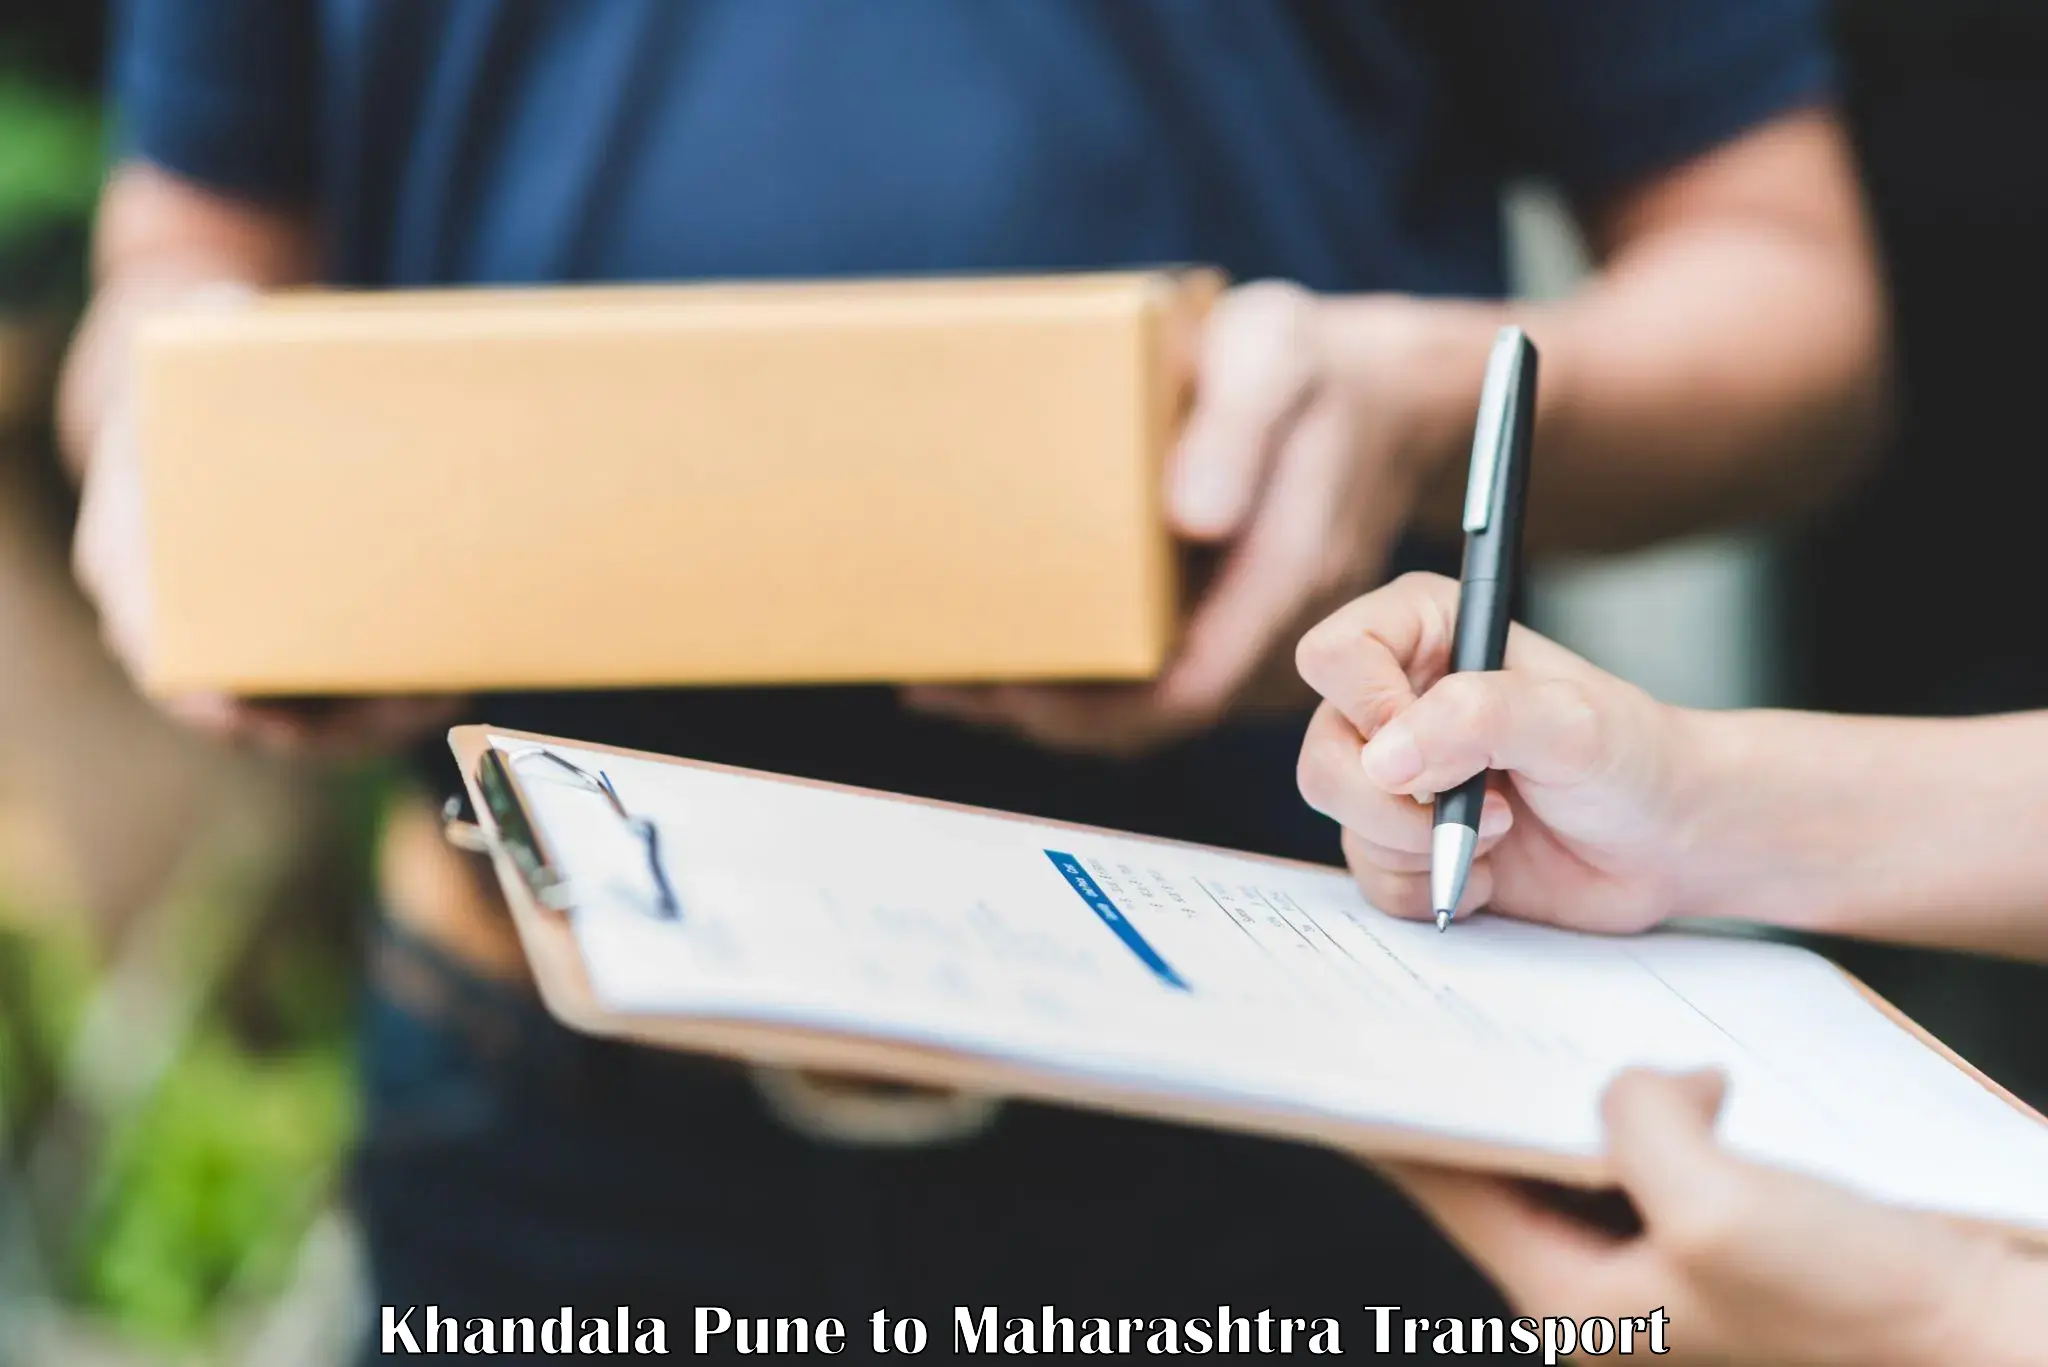 Bike transport service Khandala Pune to Chandwad